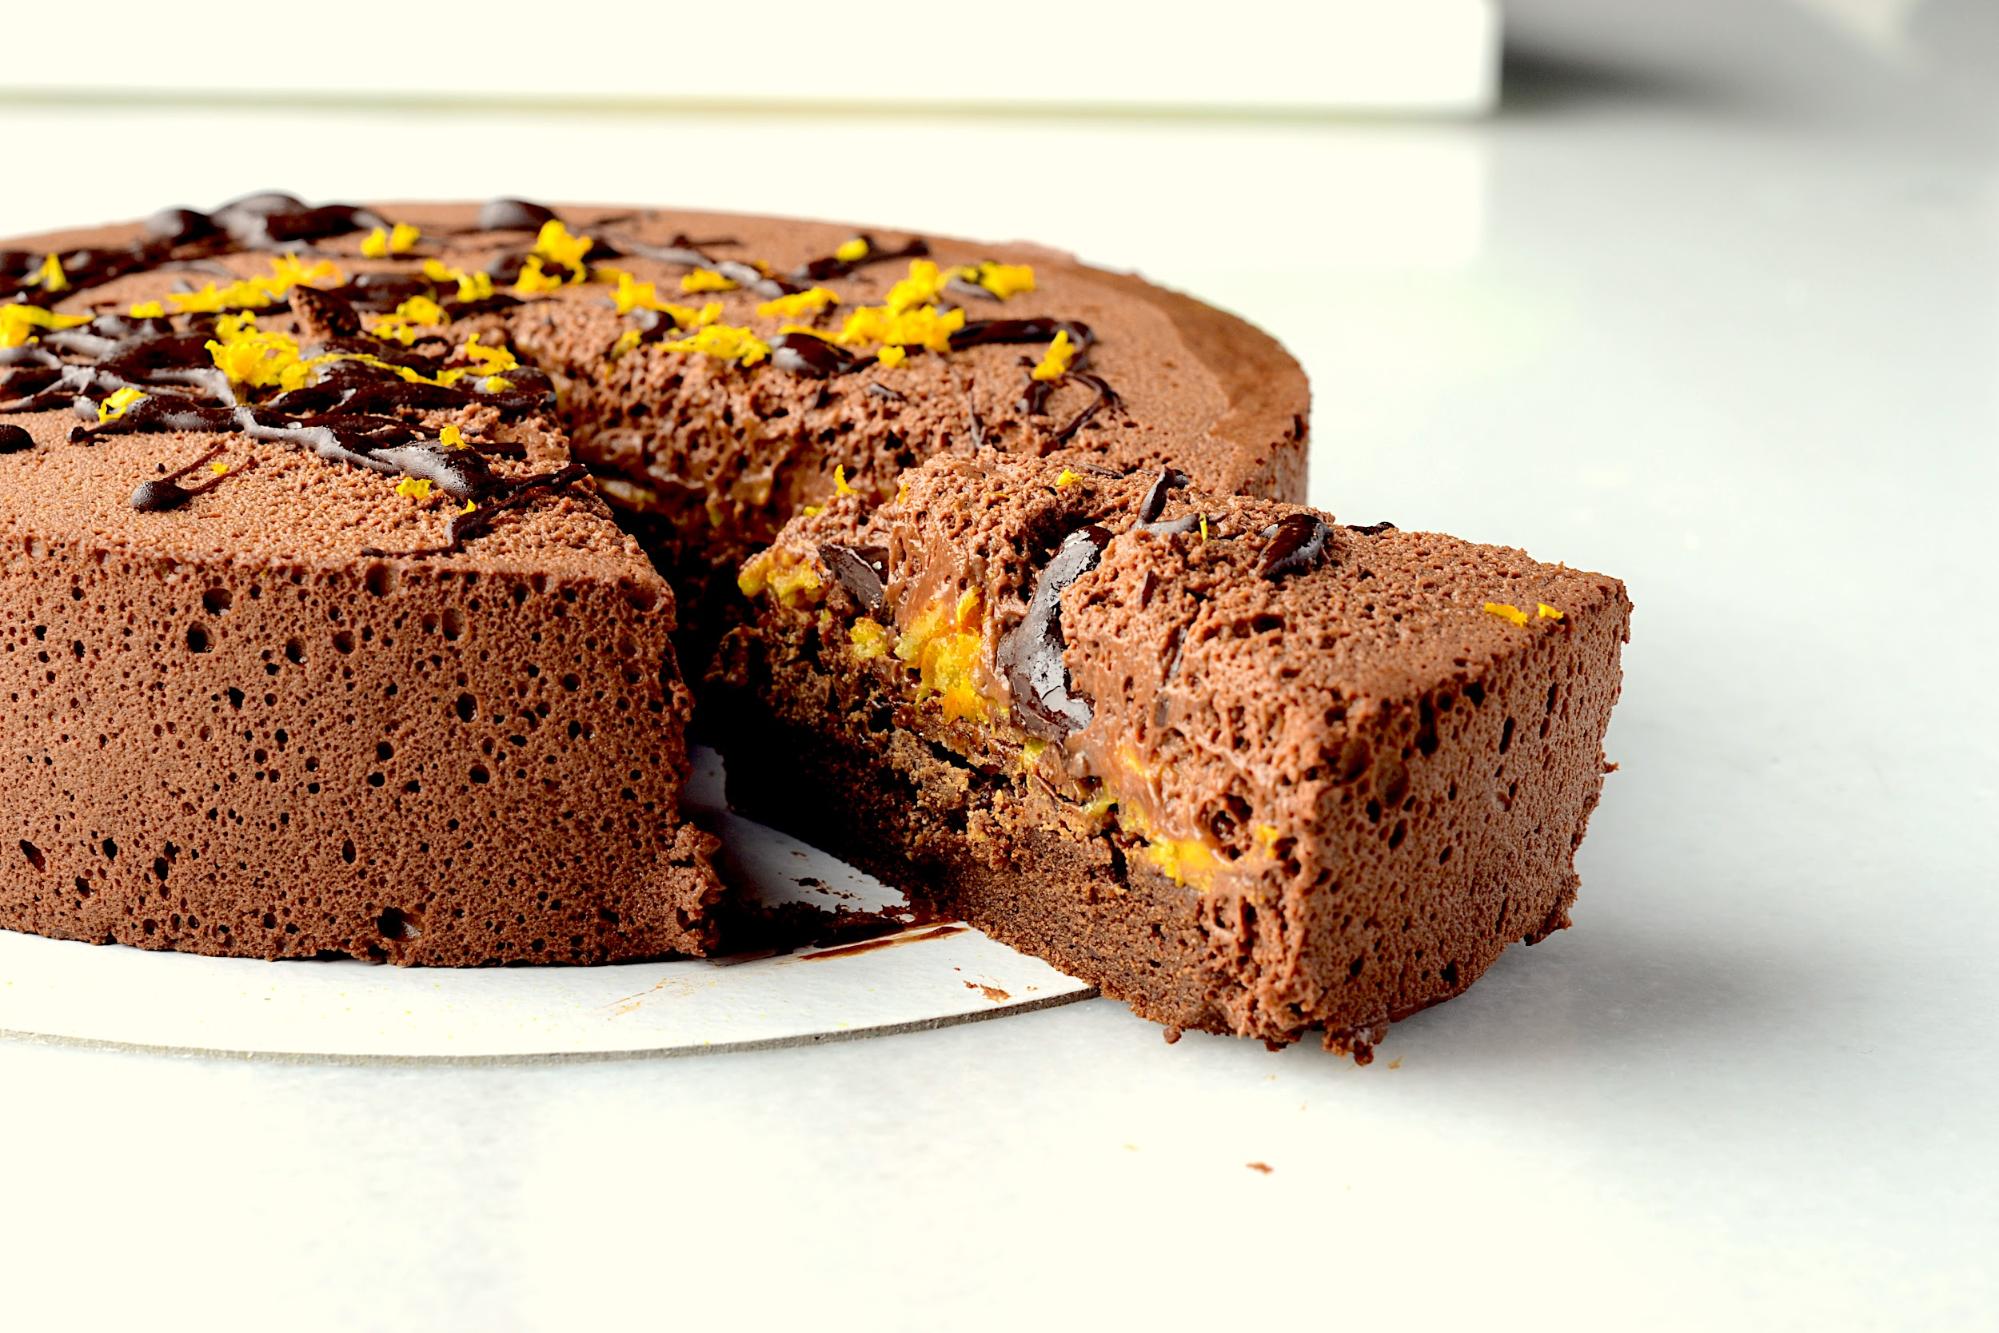 Una de las creaciones clásicas de Lucila Canero es su tarta mousse de chocolate